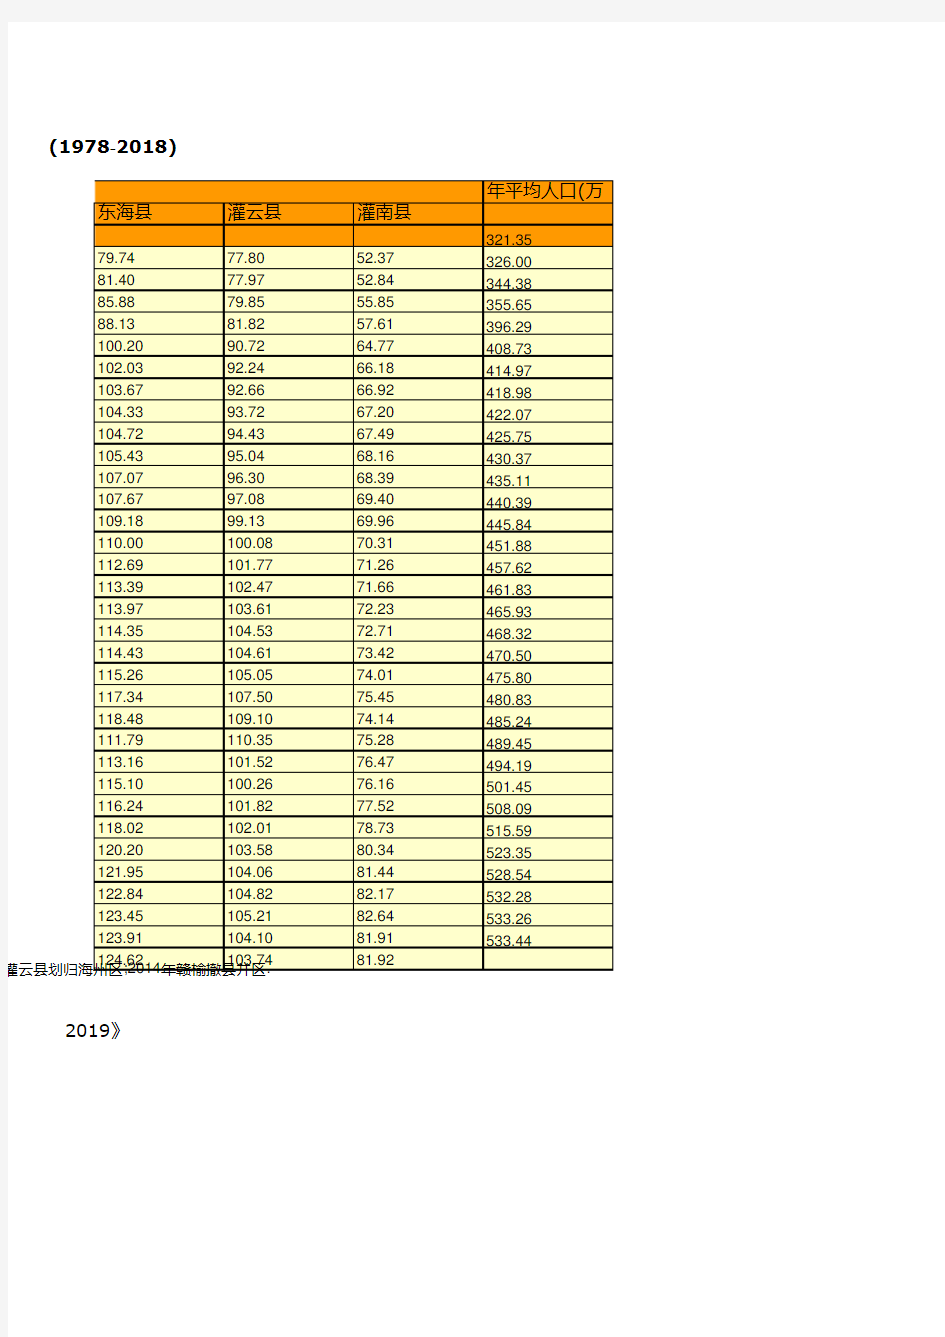 连云港市统计年鉴社会经济发展指标数据：主要年份人口数统计(1978-2018)